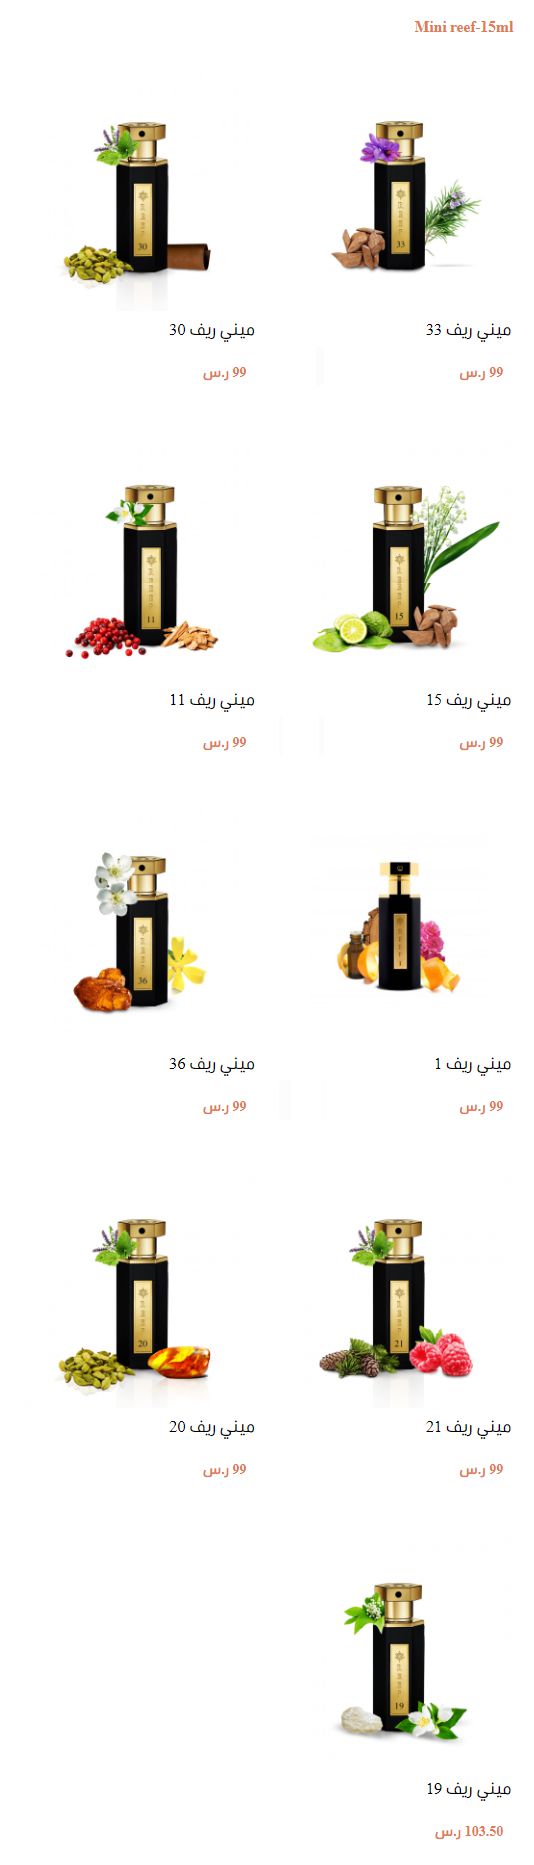 Mini reef 15ml ريف العطور REEF Perfumes اسعار عطور ريف في السعودية